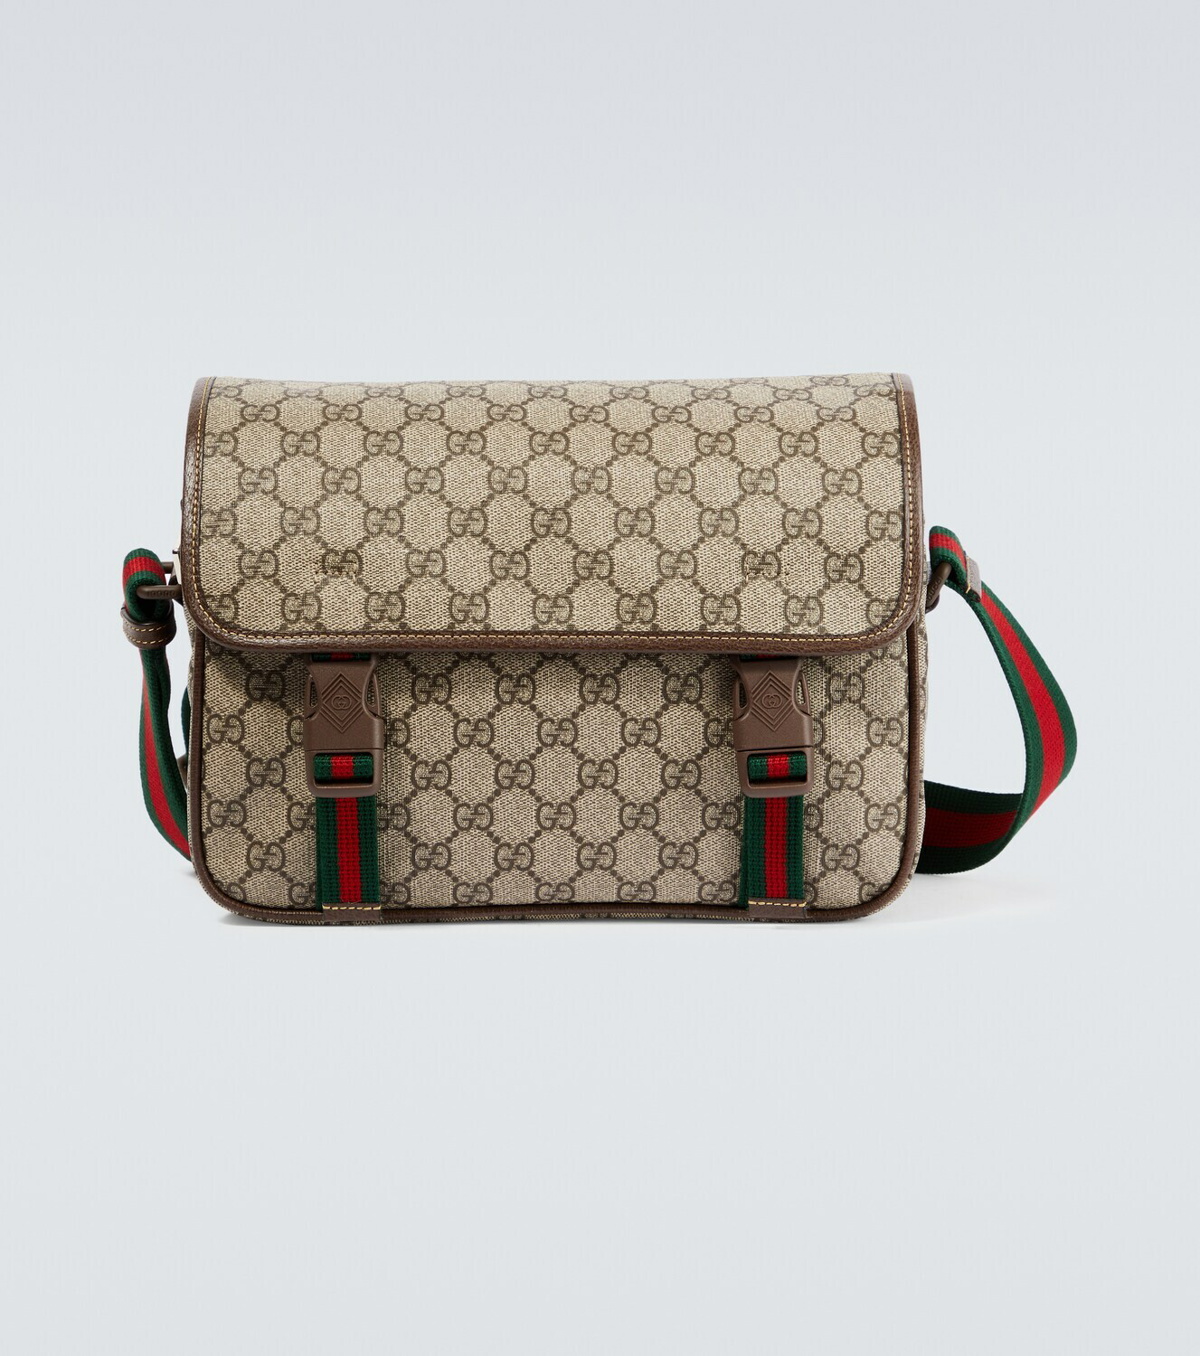 Gucci Beige GG Supreme Flat Messenger Bag in Natural for Men